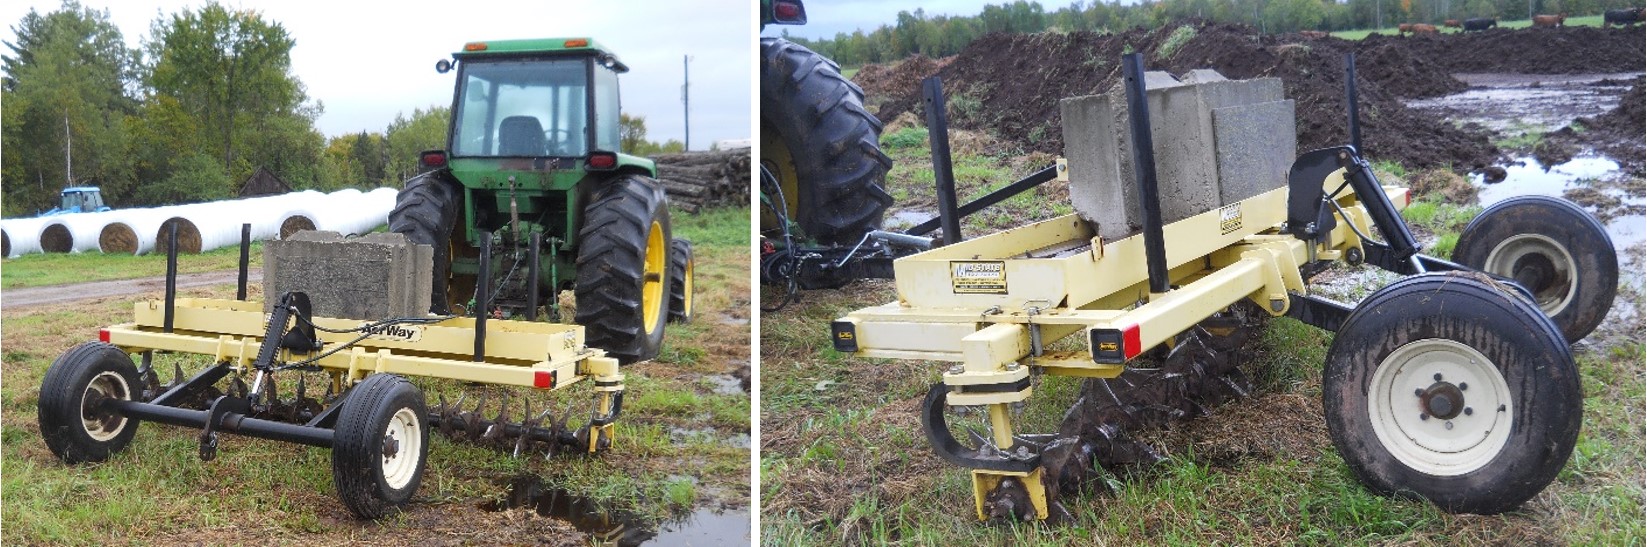 两张图片显示土壤耕作设备。